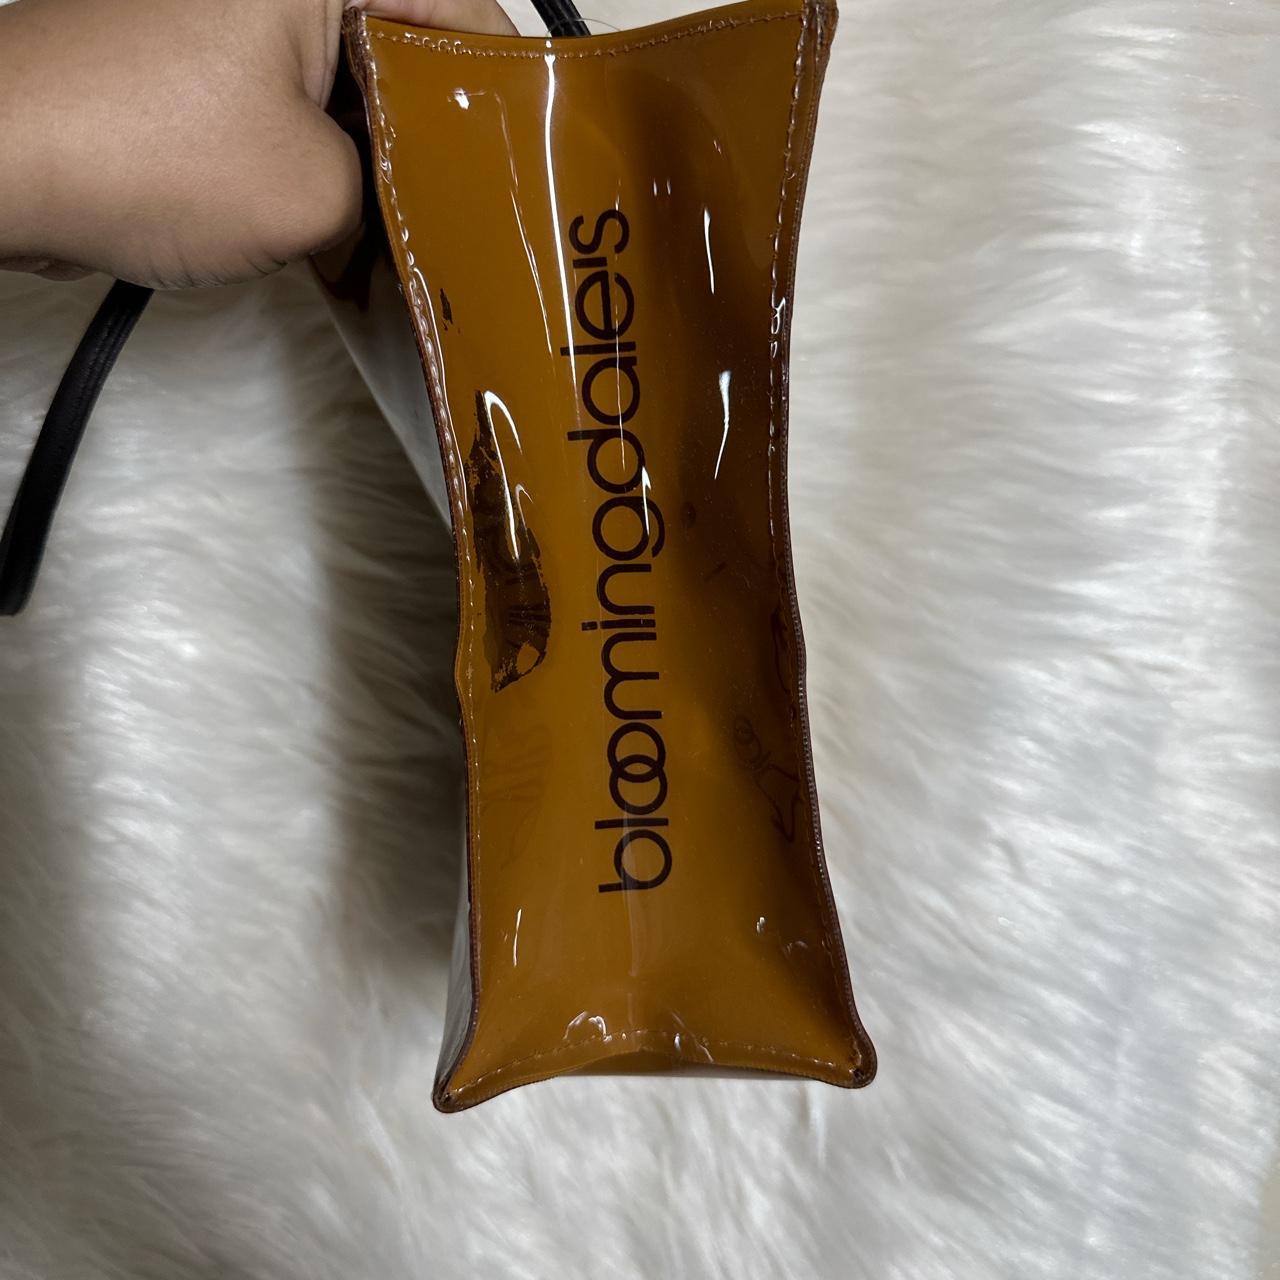 BLOOMINGDALES MEDIUM BROWN BAG REAL. Bought in NYC - Depop